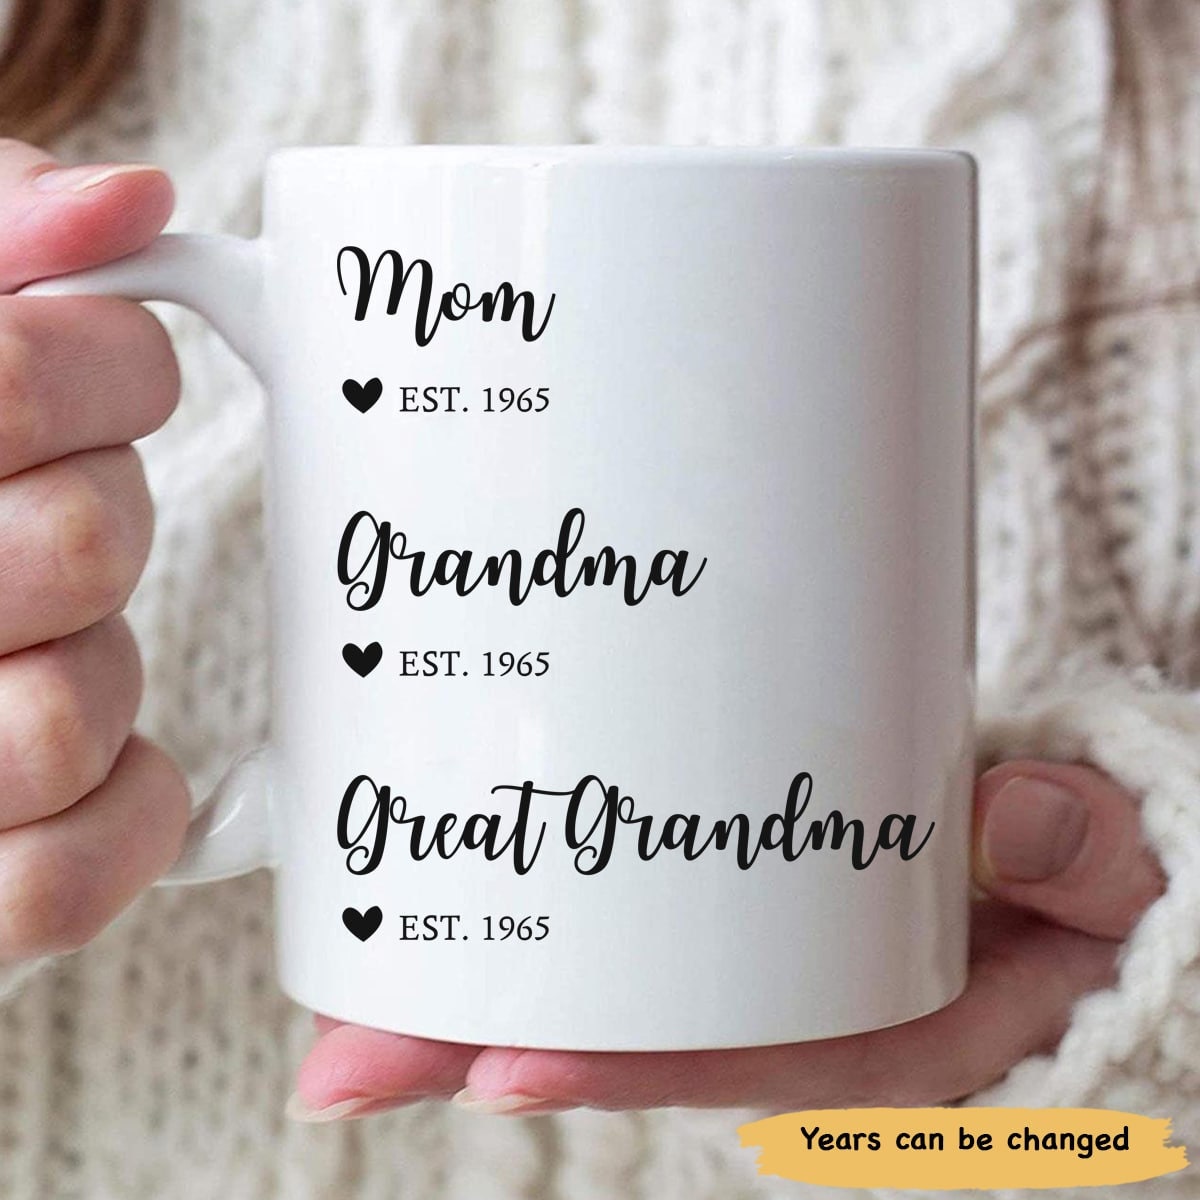  UNNESALT Grandma Gifts - Birthday Gifts for Grandma, Grandmother  - Christmas Gifts for Grandma from Grandkids, Granddaughter, Grandson - New Grandma  Gifts, Mothers Day Gift For Grandma 6pcs : Home & Kitchen